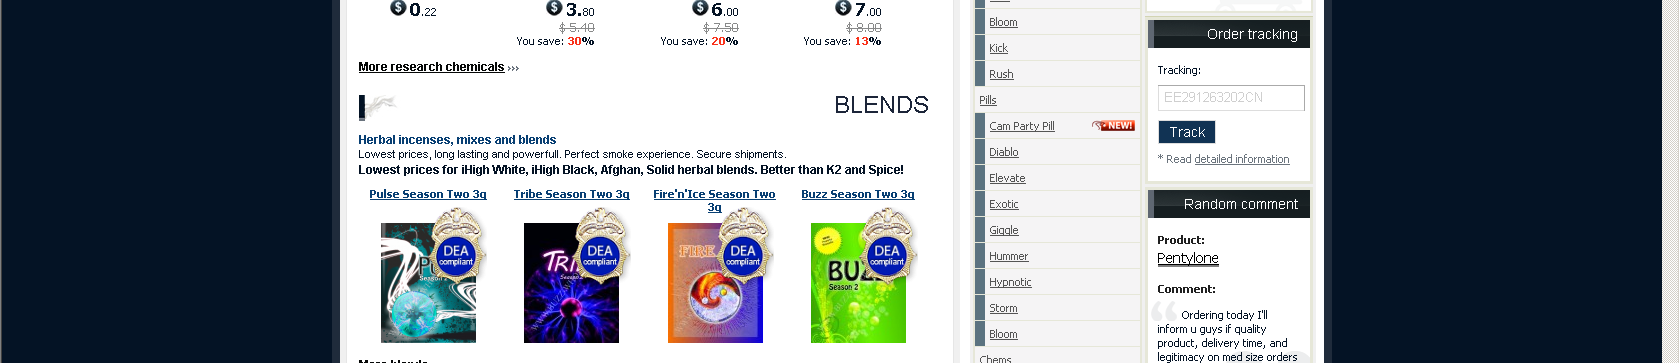 com) Blends (4) Salts (10) Pills (9) Chems (RC):